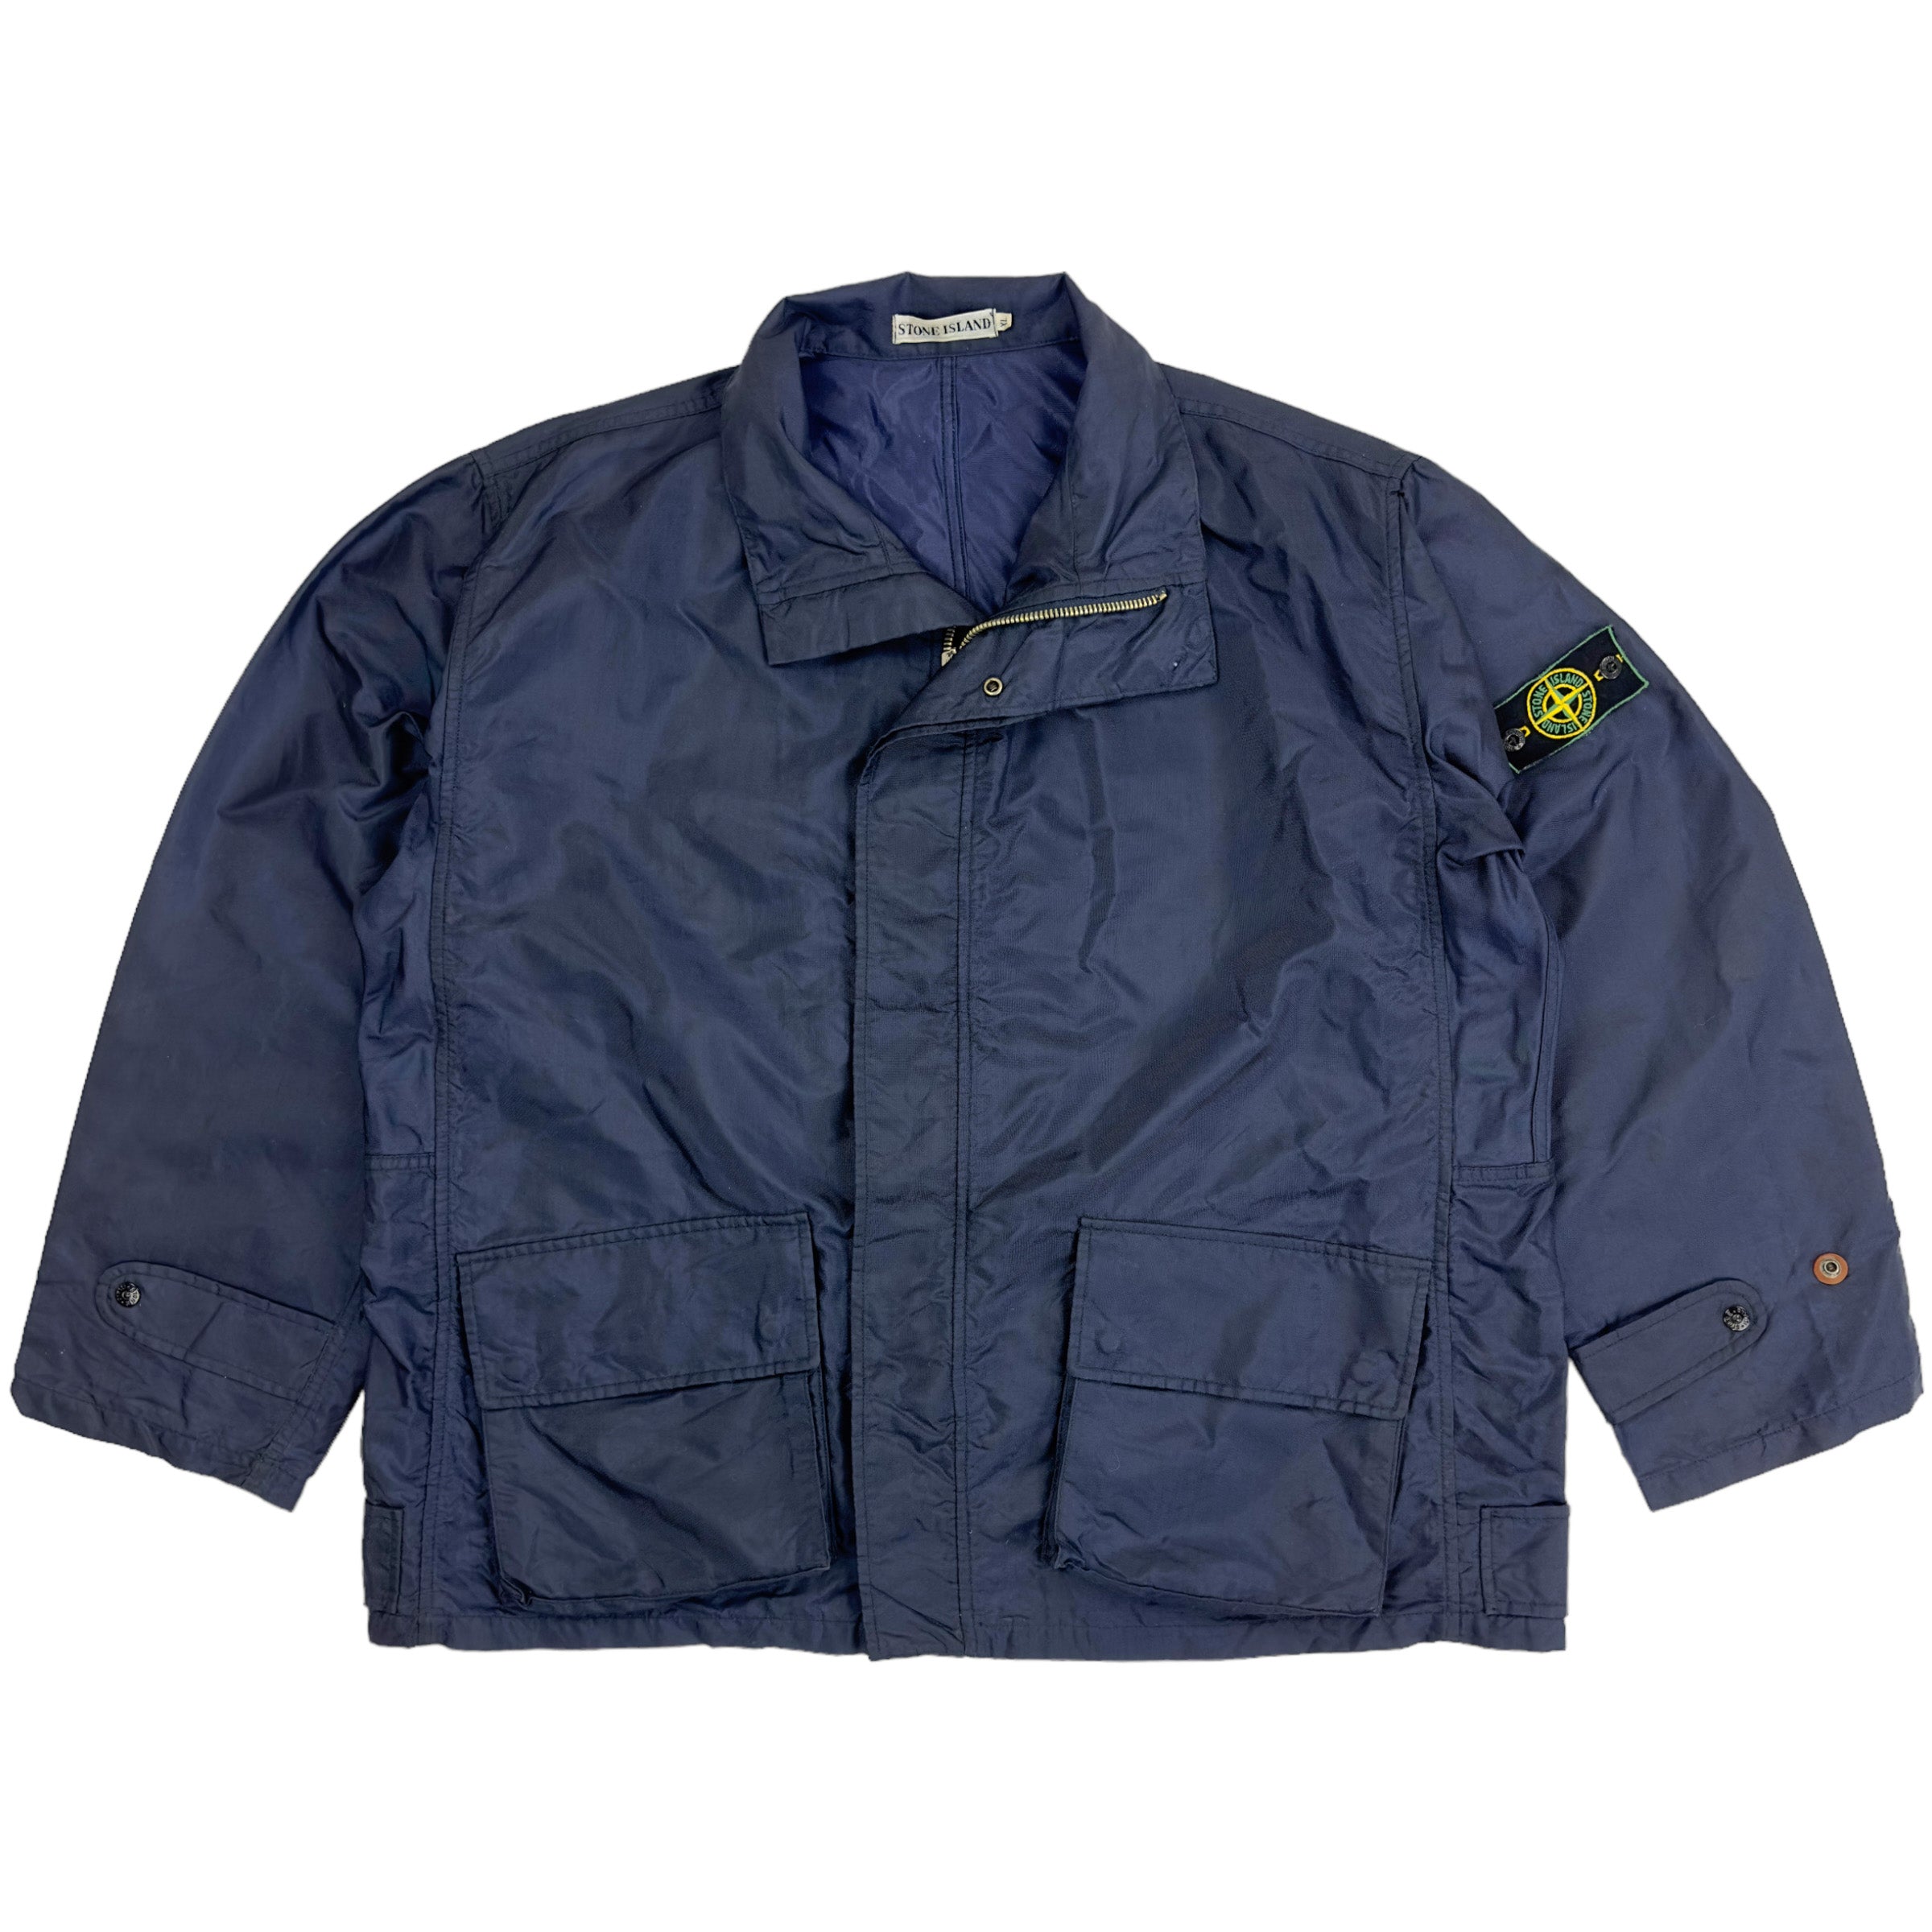 表記サイズXXL95AW Stone Island formula steel jacket